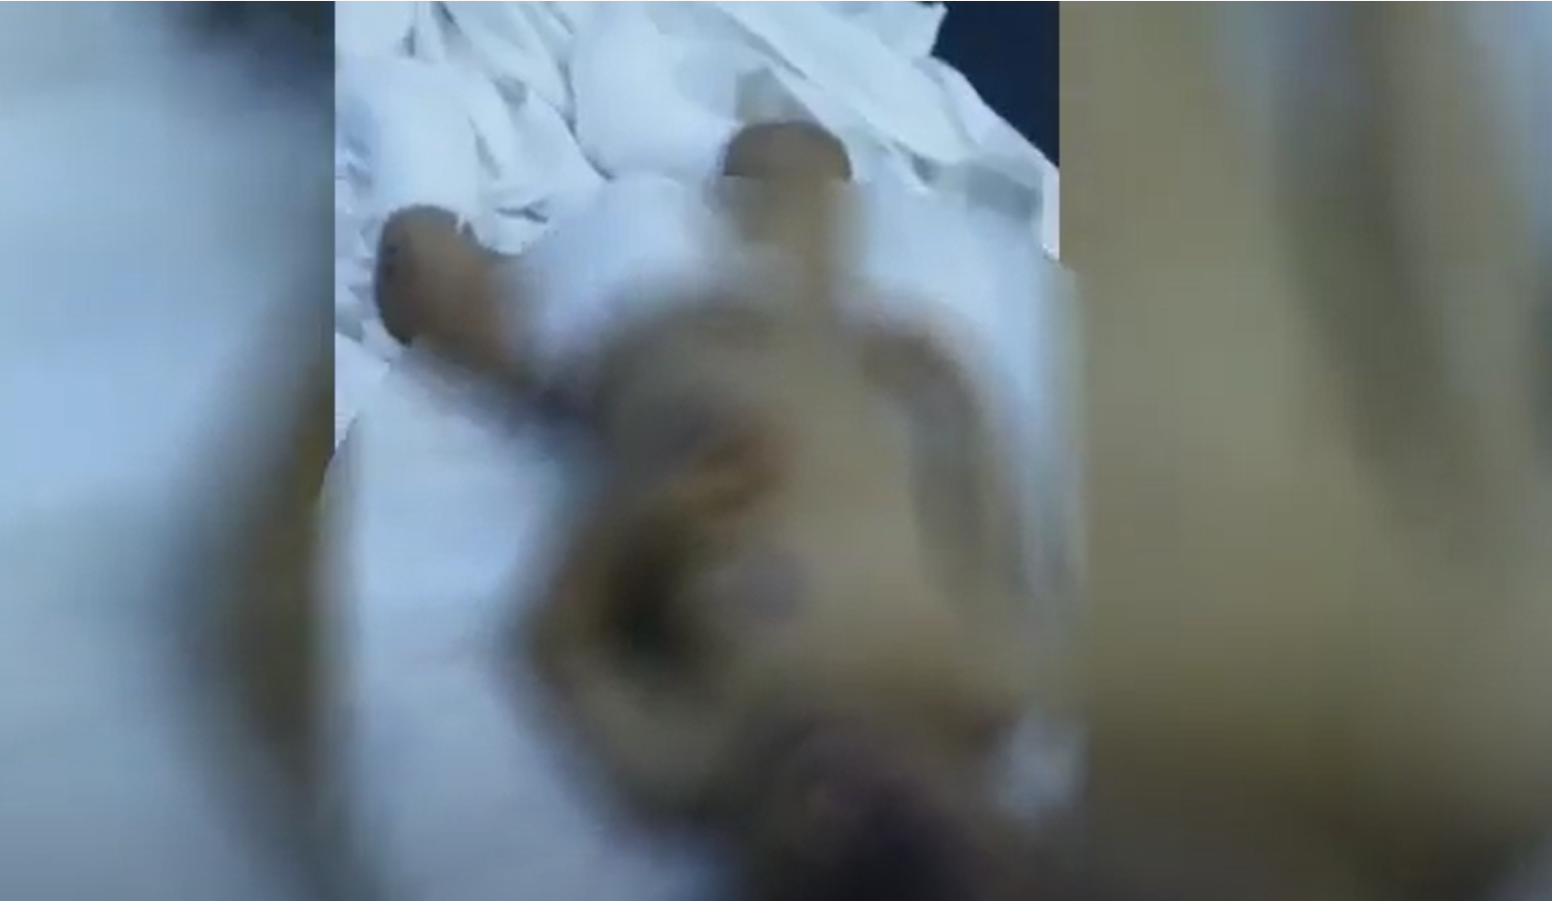  الطفل حسن عبده محمد في المستشفى